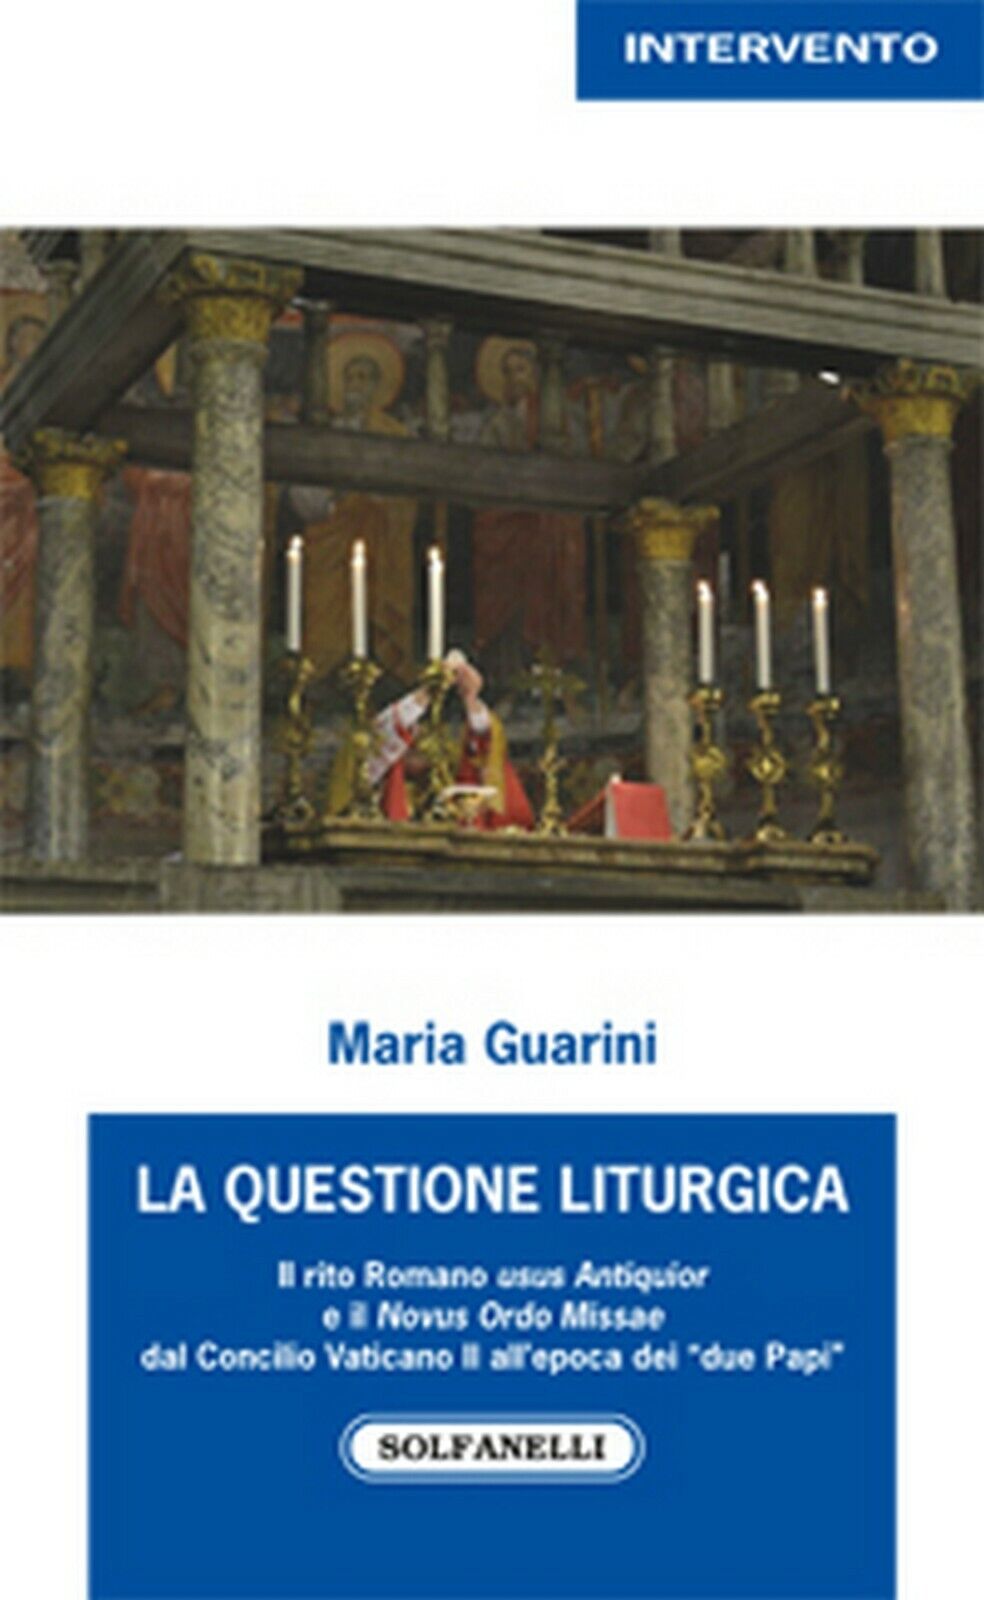 LA QUESTIONE LITURGICA  di Maria Guarini,  Solfanelli Edizioni